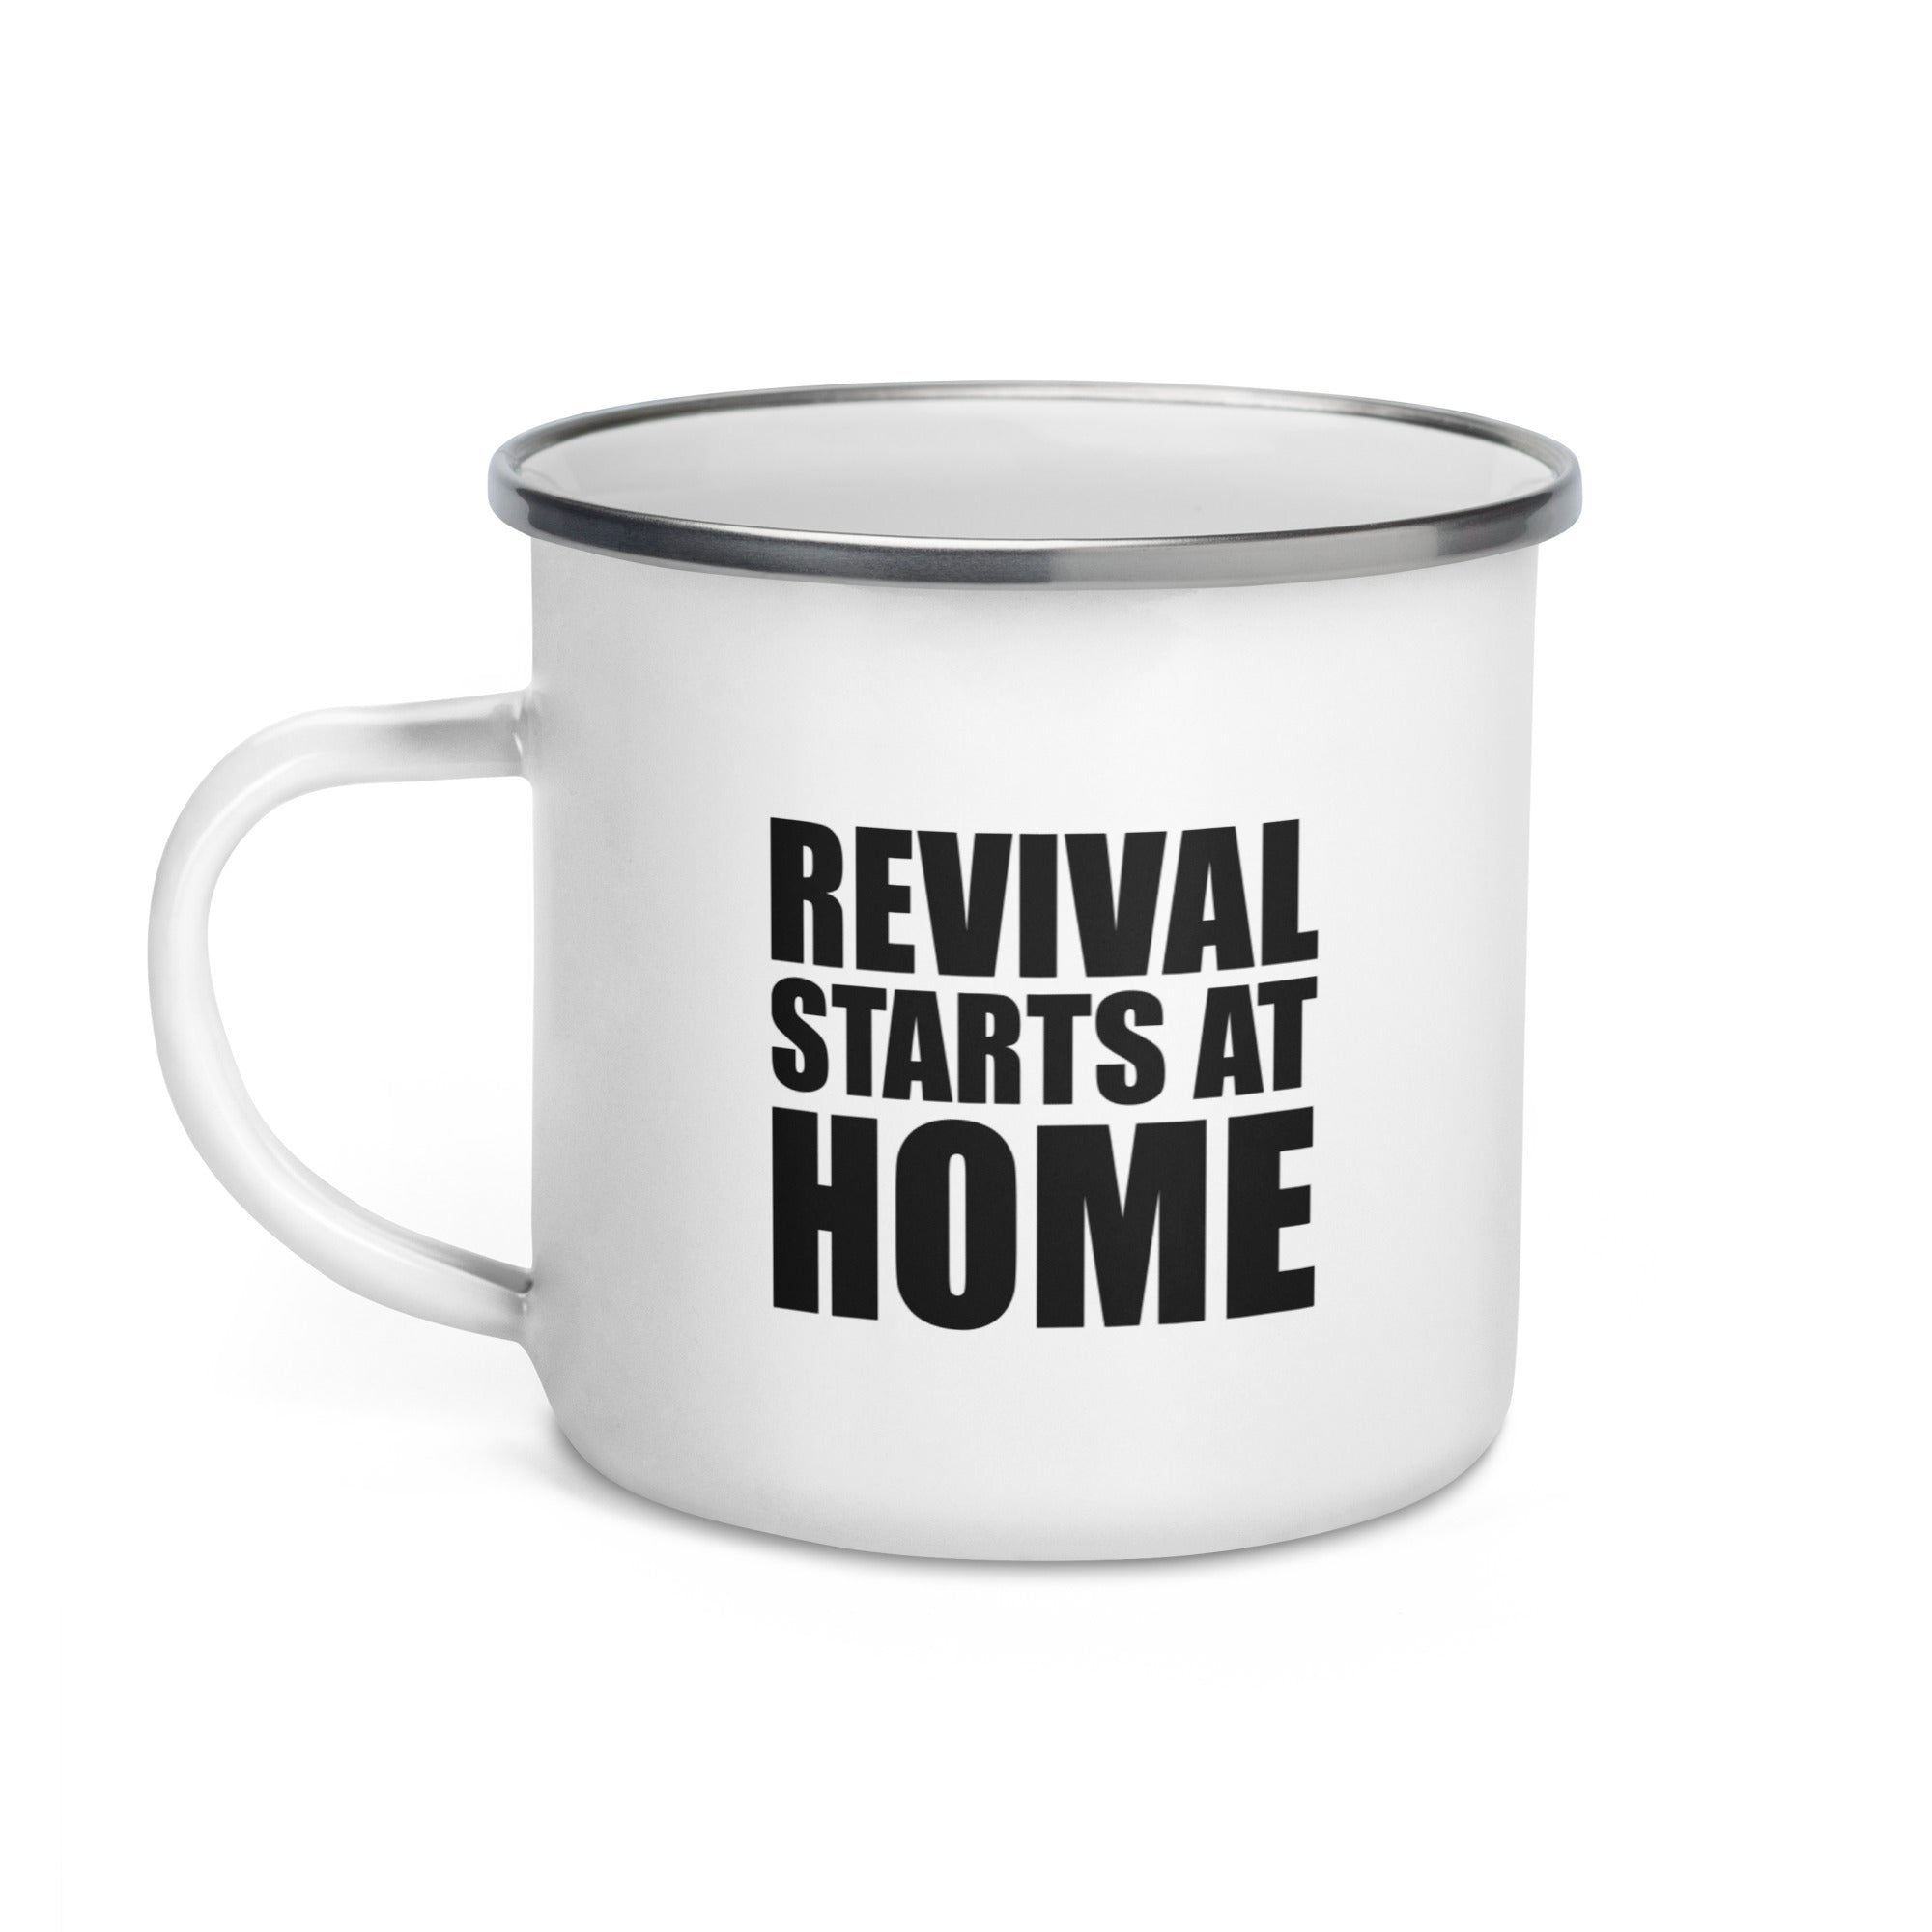 Revival Starts At Home 12oz Enamel Camping Mug